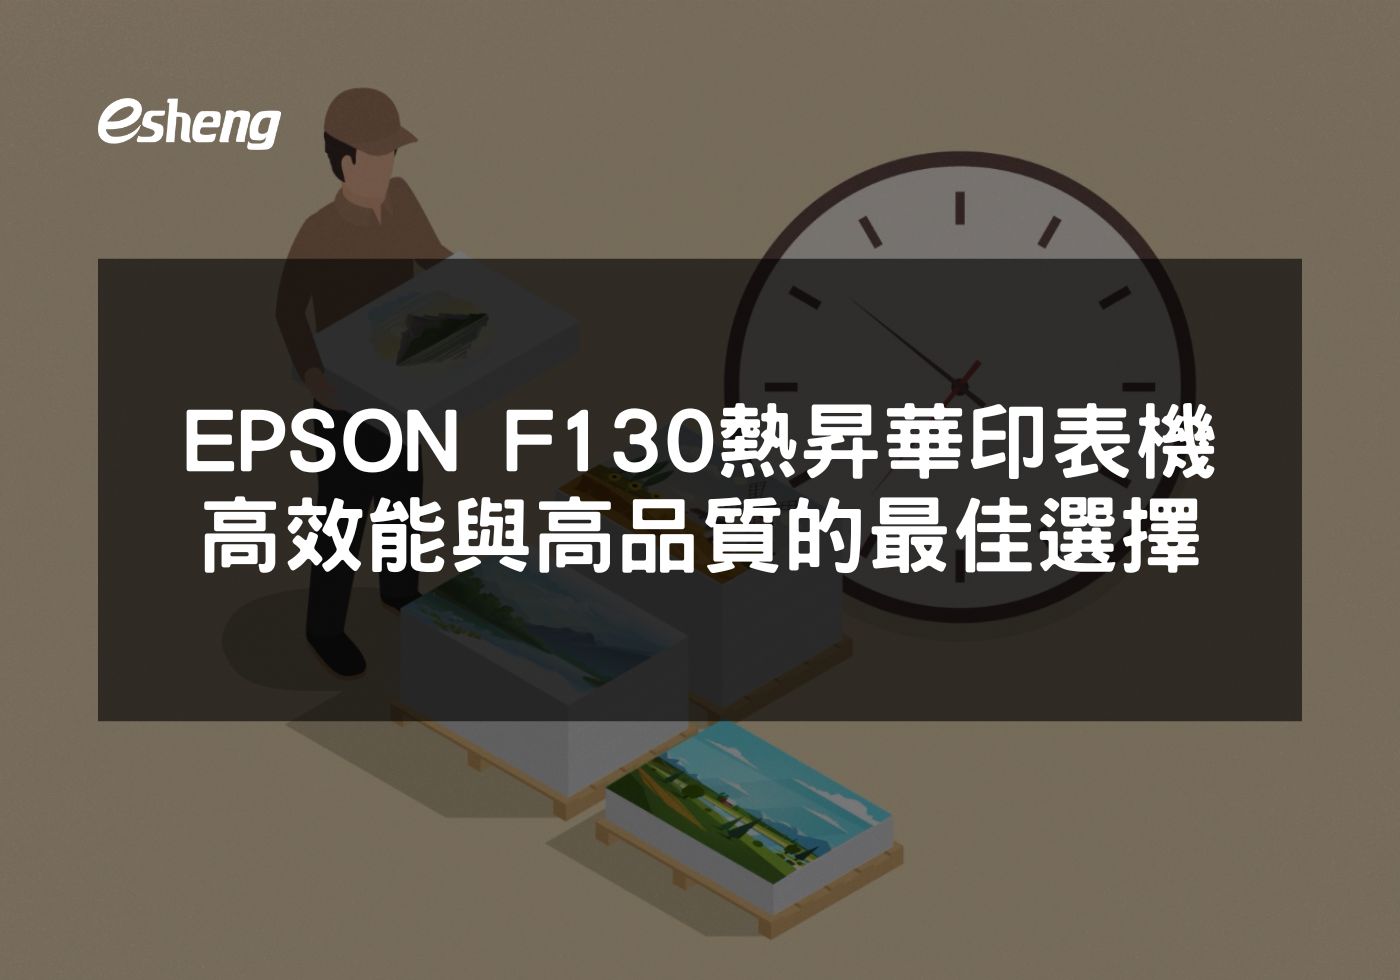 EPSON F130 熱昇華印表機展現專業列印品質